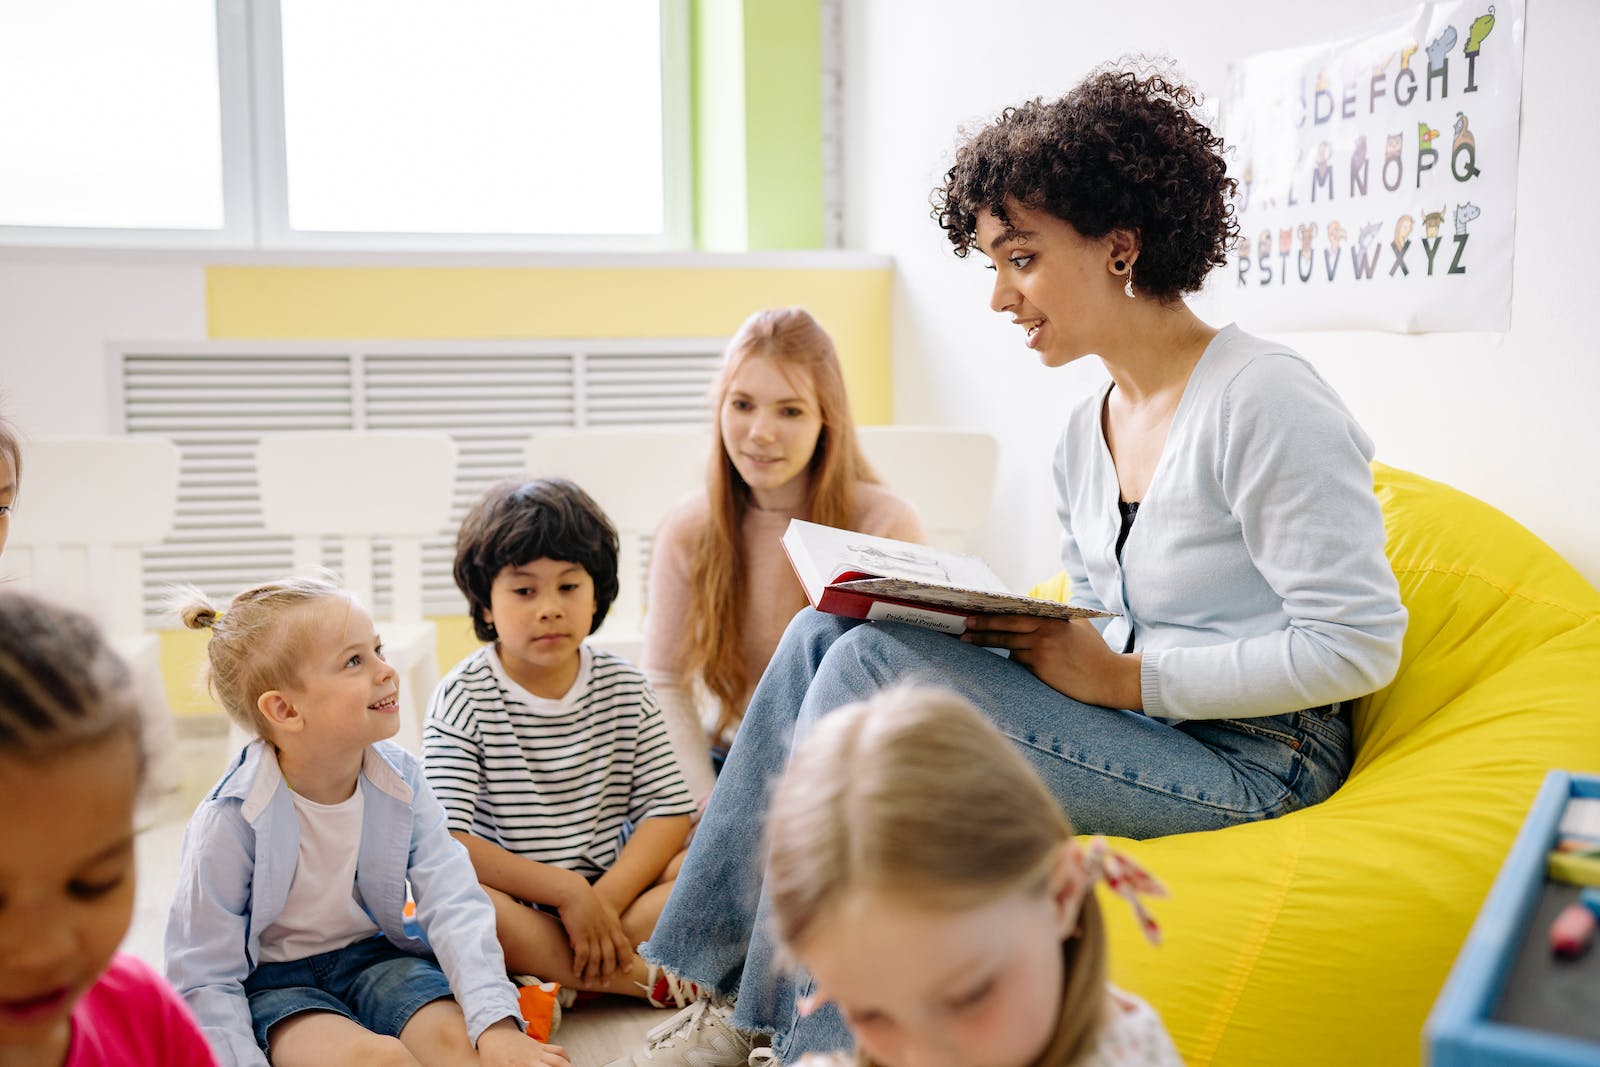 Educatrice petite enfance lisant une histoire à un groupe de petits, dans une salle éclairée